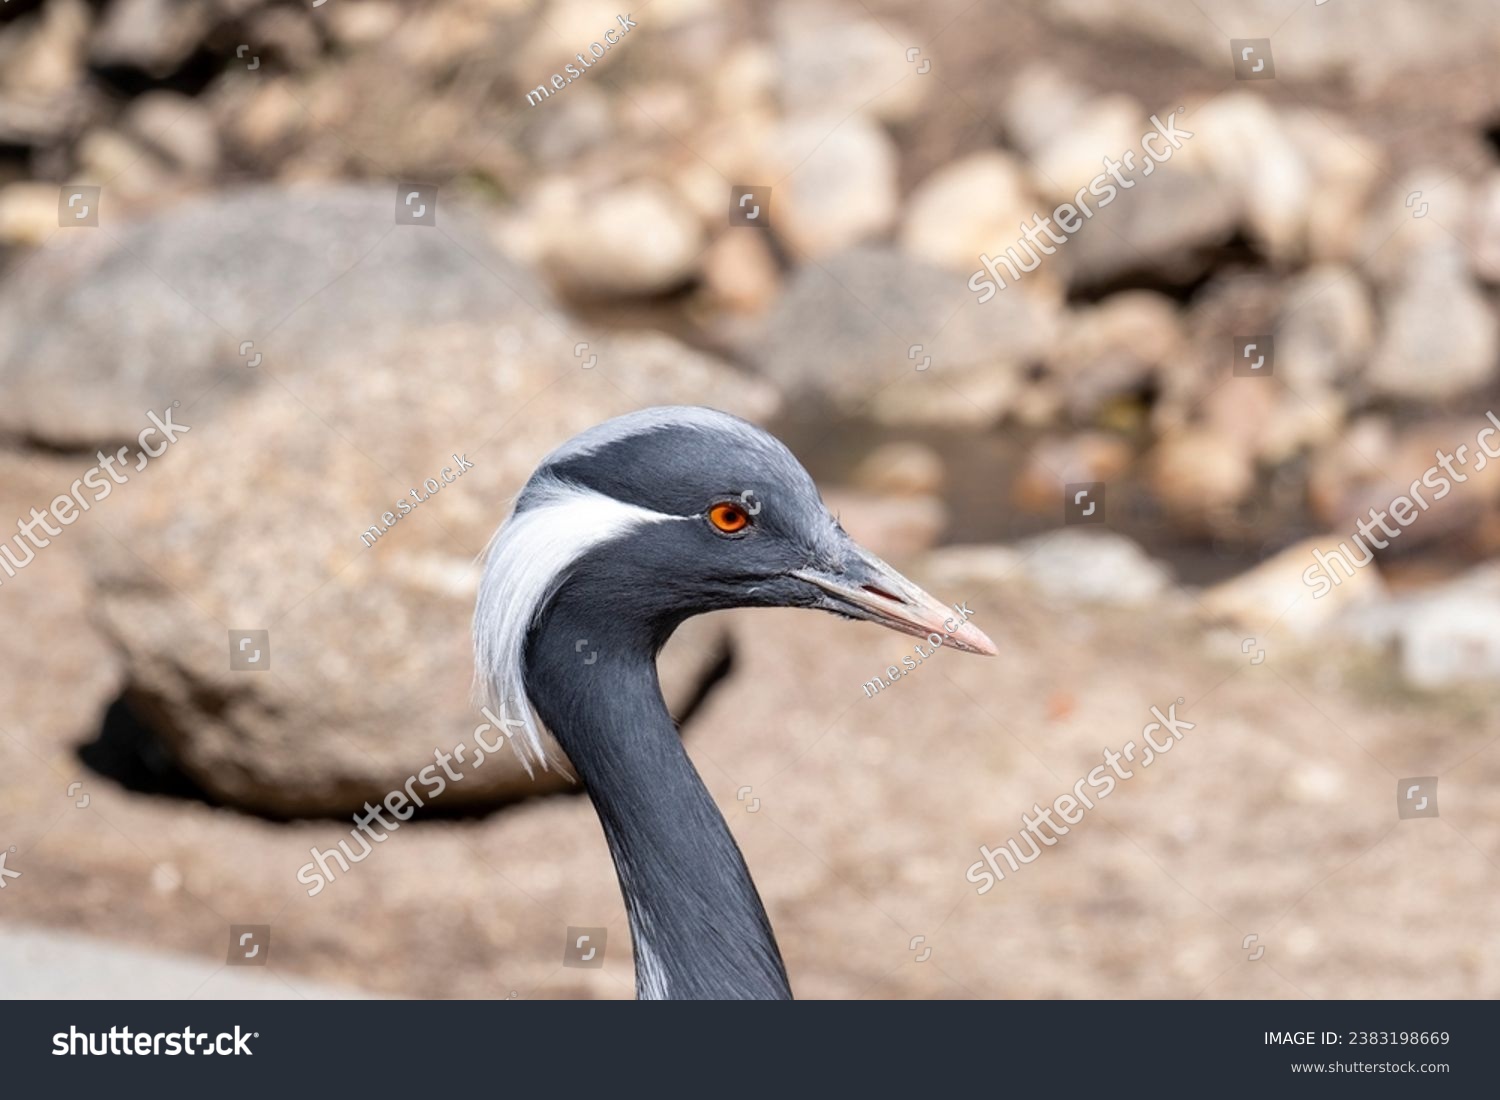 The demoiselle crane (Grus virgo) is a species of crane found in central Eurasia. demoiselle crane (Grus virgo) in a typical breeding ecosystem. #2383198669